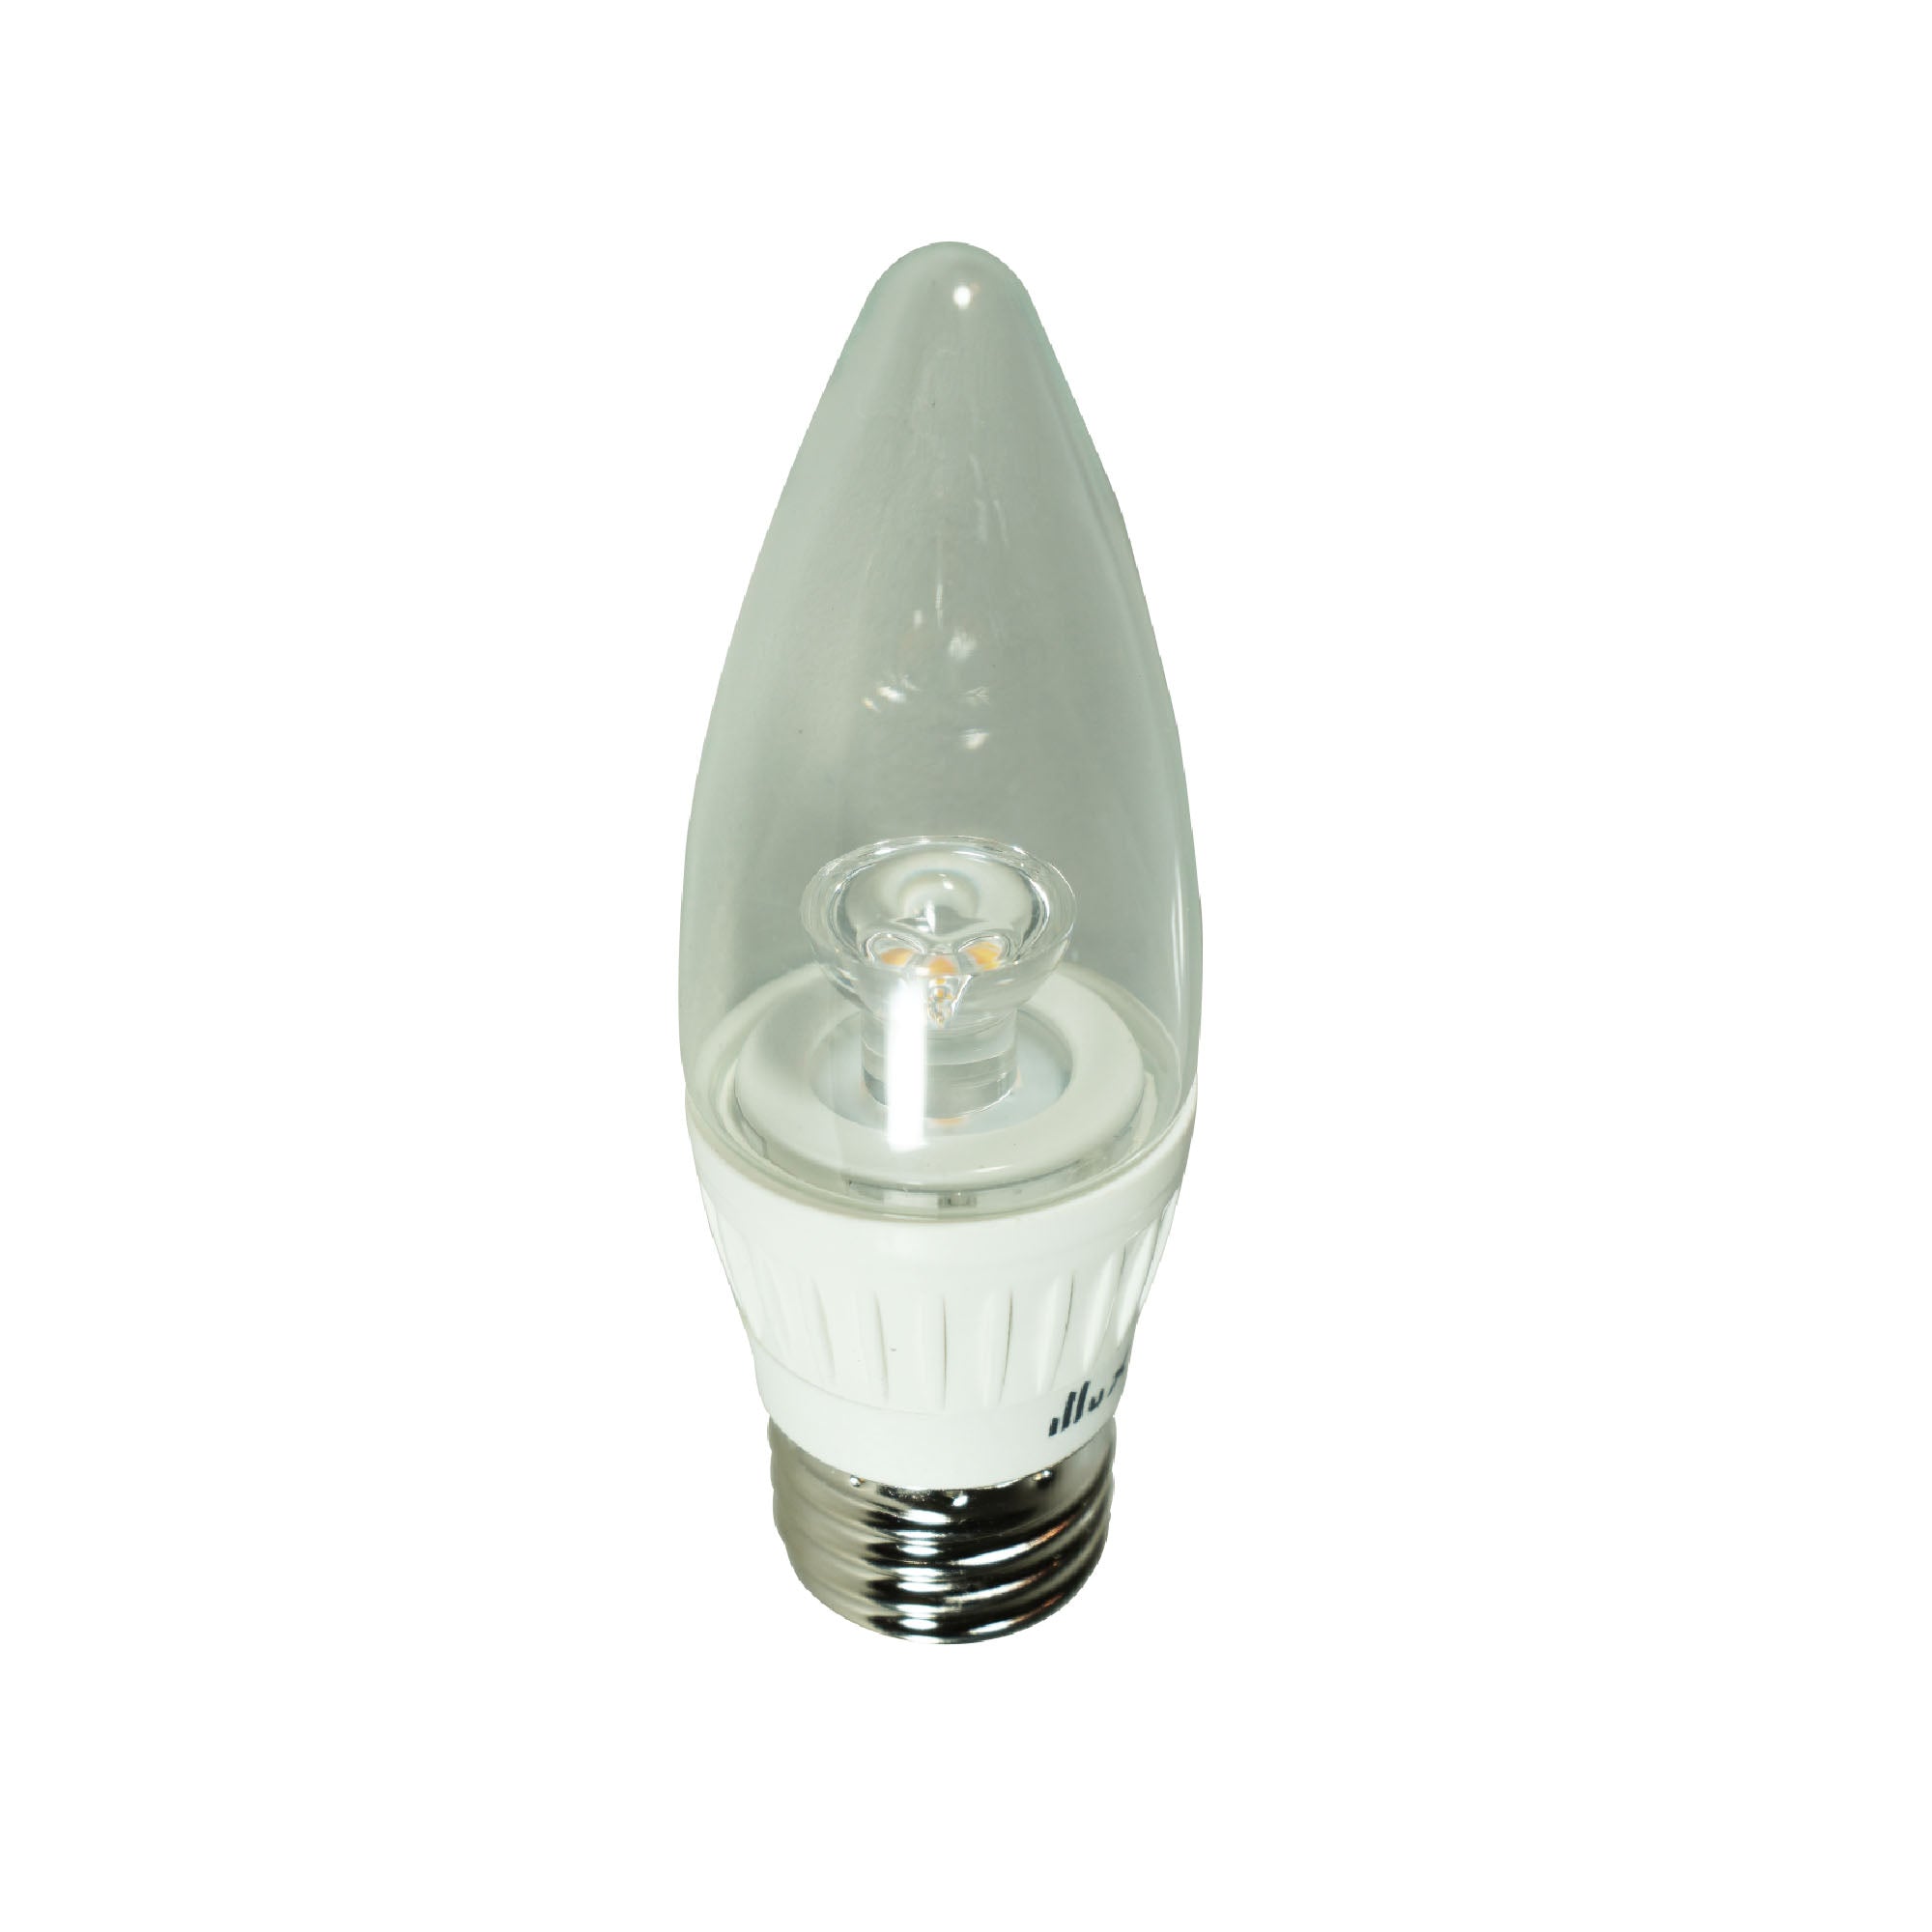 Lámpara Tipo Vela LED de 5W, 127V~ FL-10B11E26.530